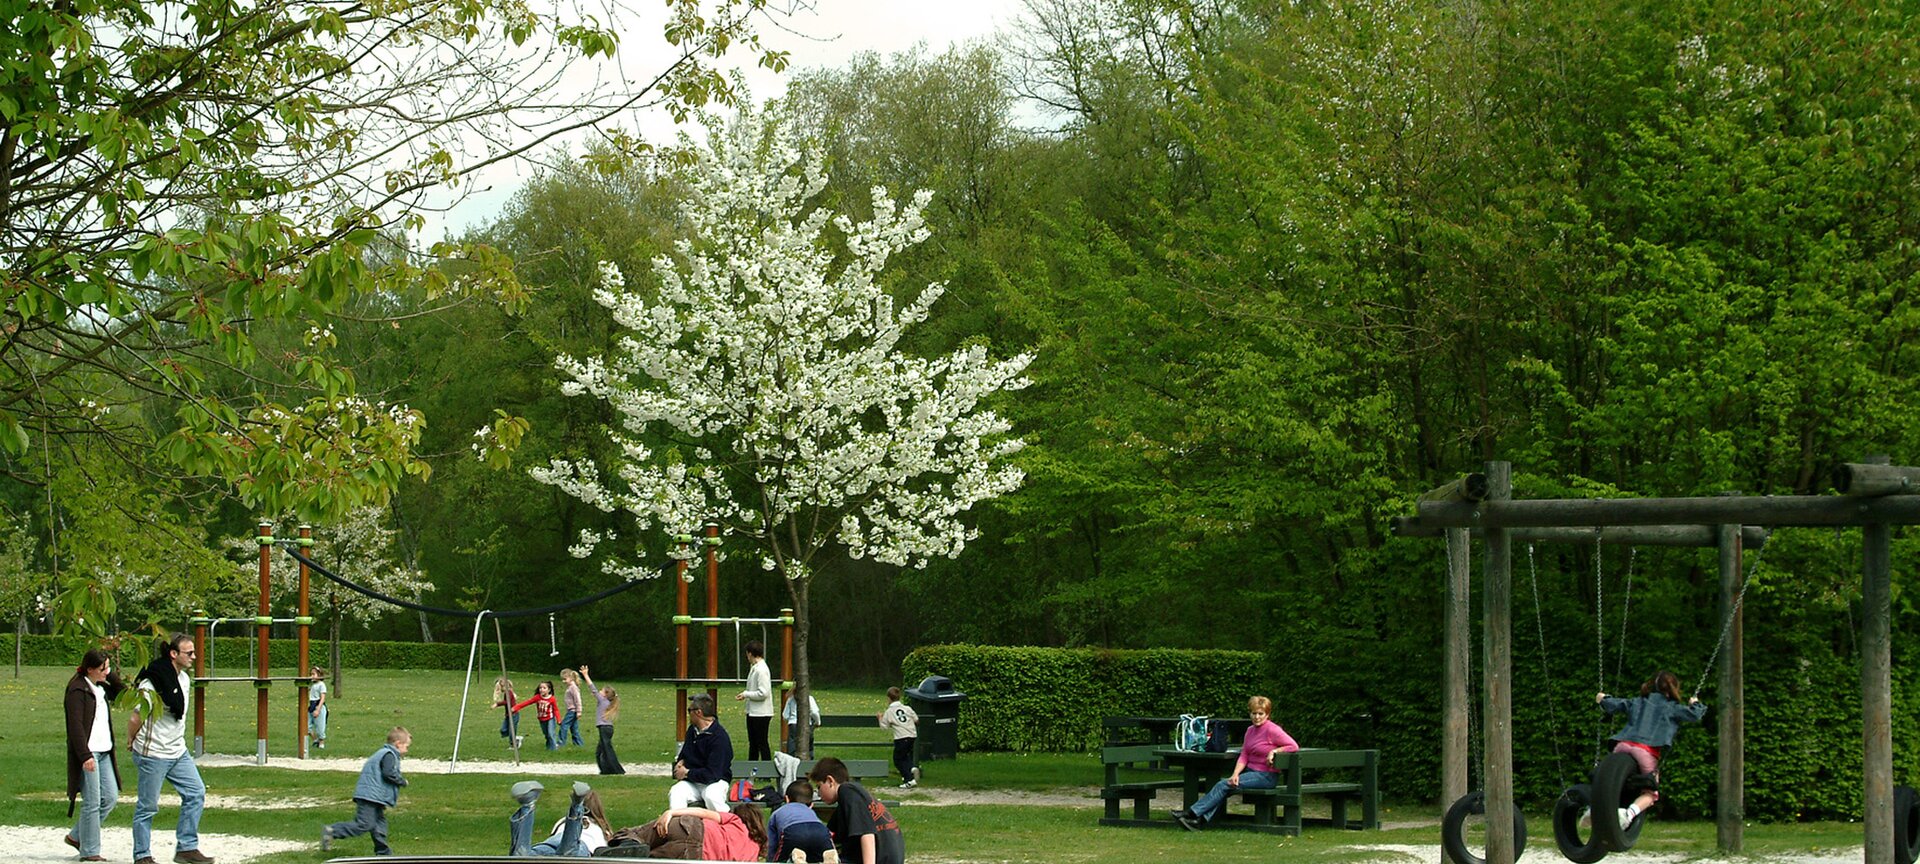 Picknickplaats Nieuwenhoven - Picknickplaats Nieuwenhoven